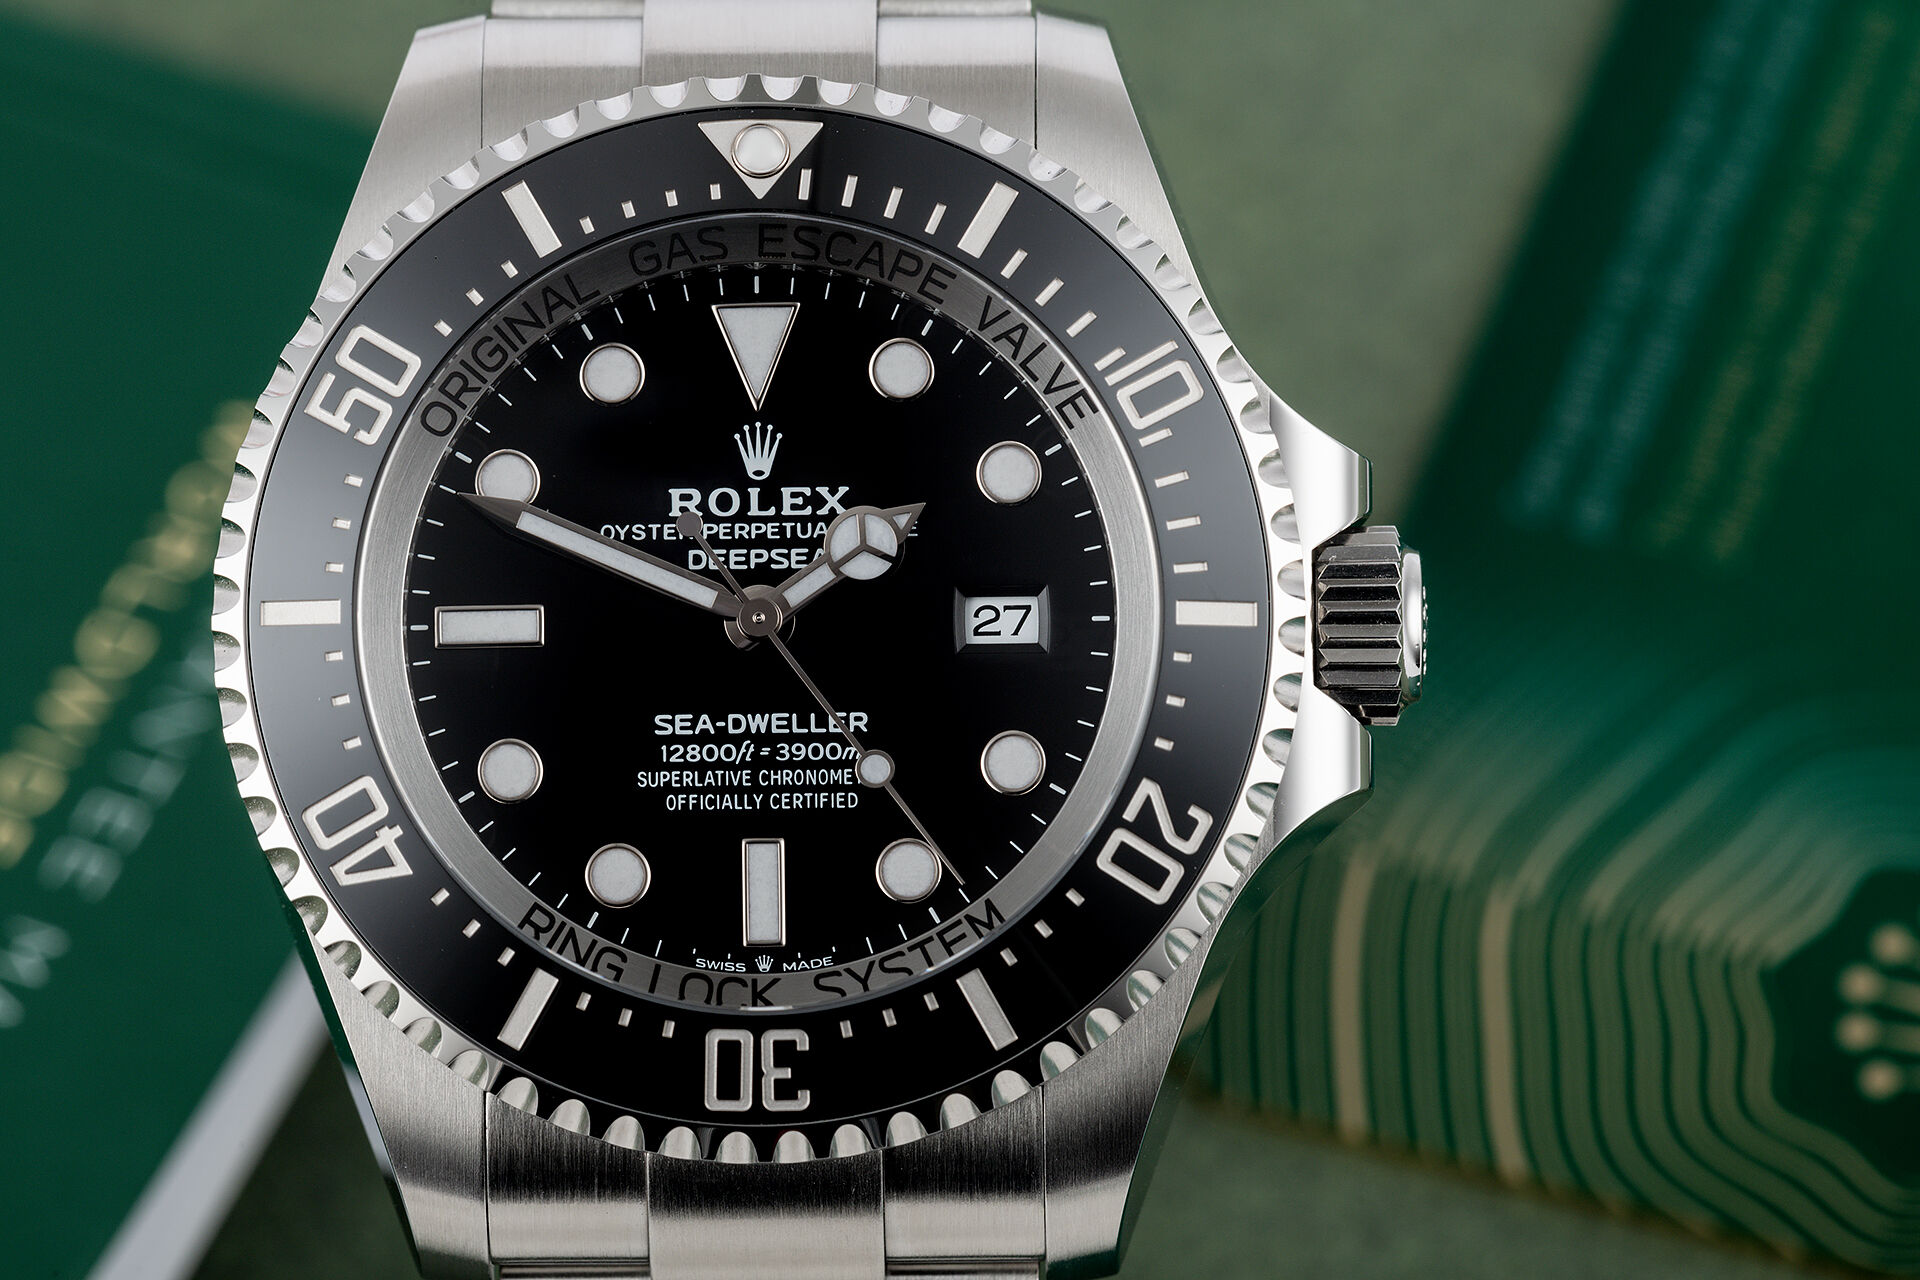 ref 126660 | 5 Year Rolex Warranty | Rolex Sea-Dweller Deepsea